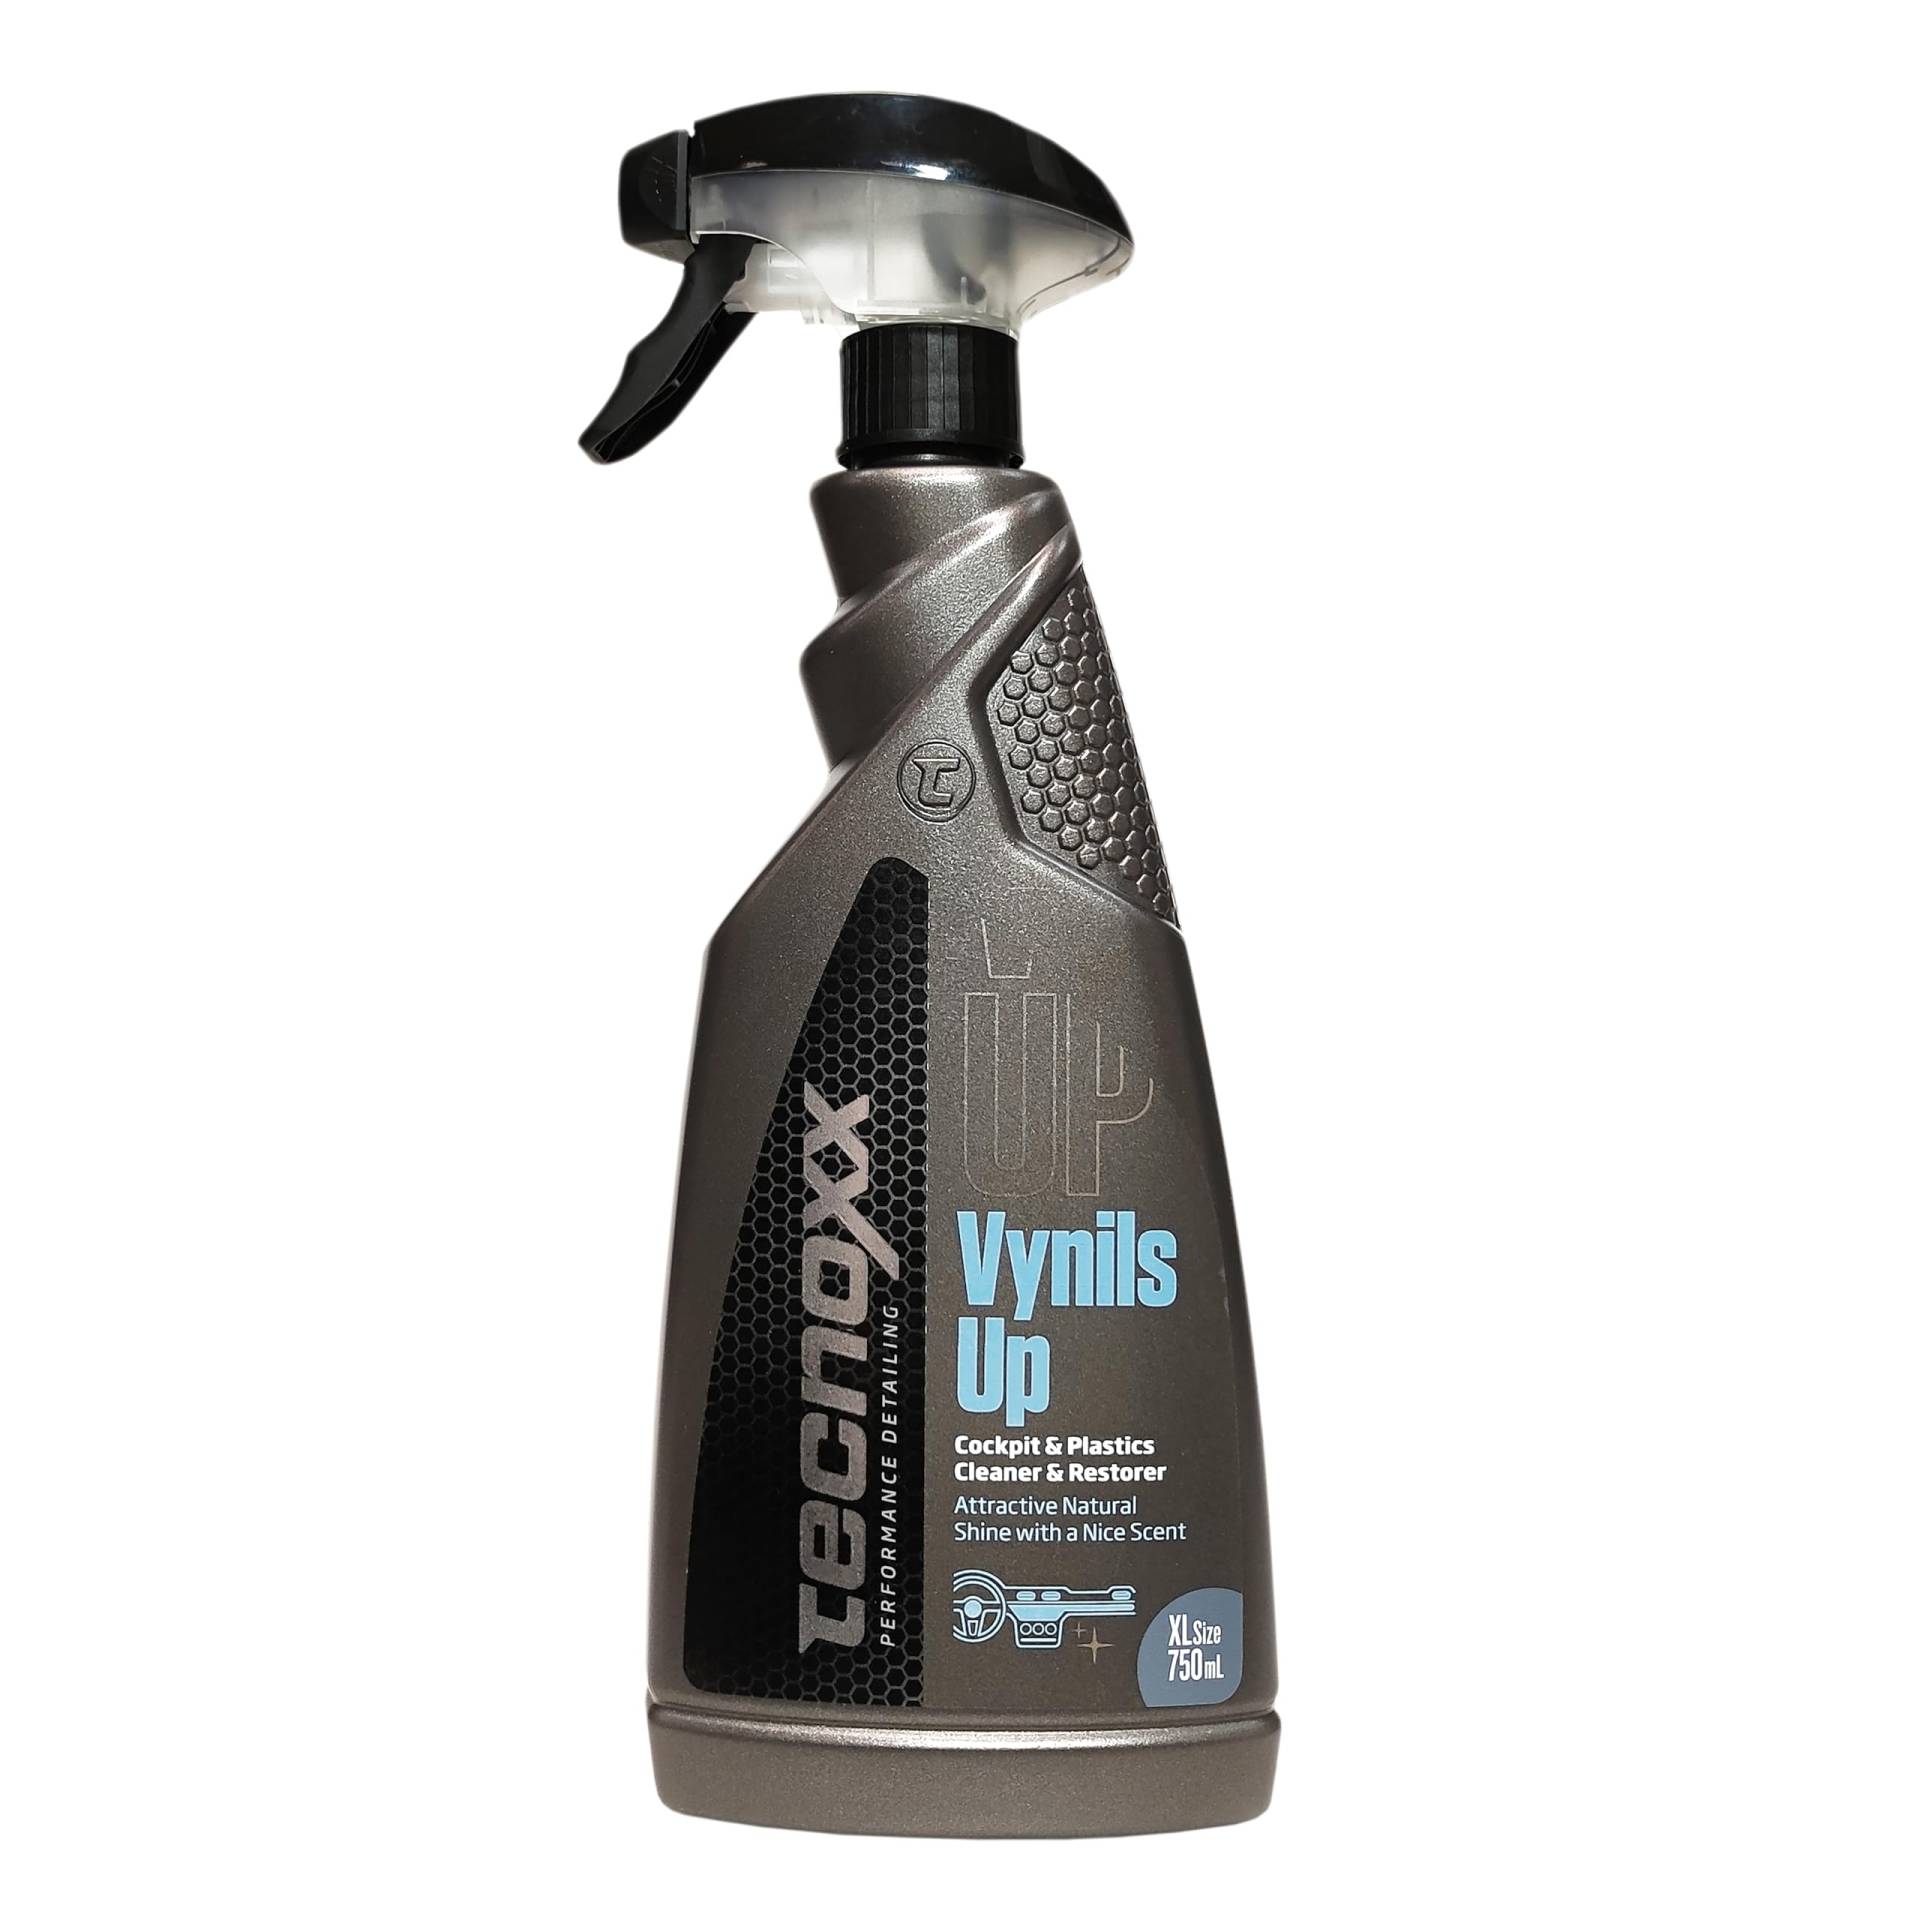 Tecnoxx – Vynils Up Reiniger und Glanzmittel für den Innenraum, parfümiert für profilierte Armaturenkonsolen 750 mL Sprühbehälter XL von Tecnoxx Performance Detailing